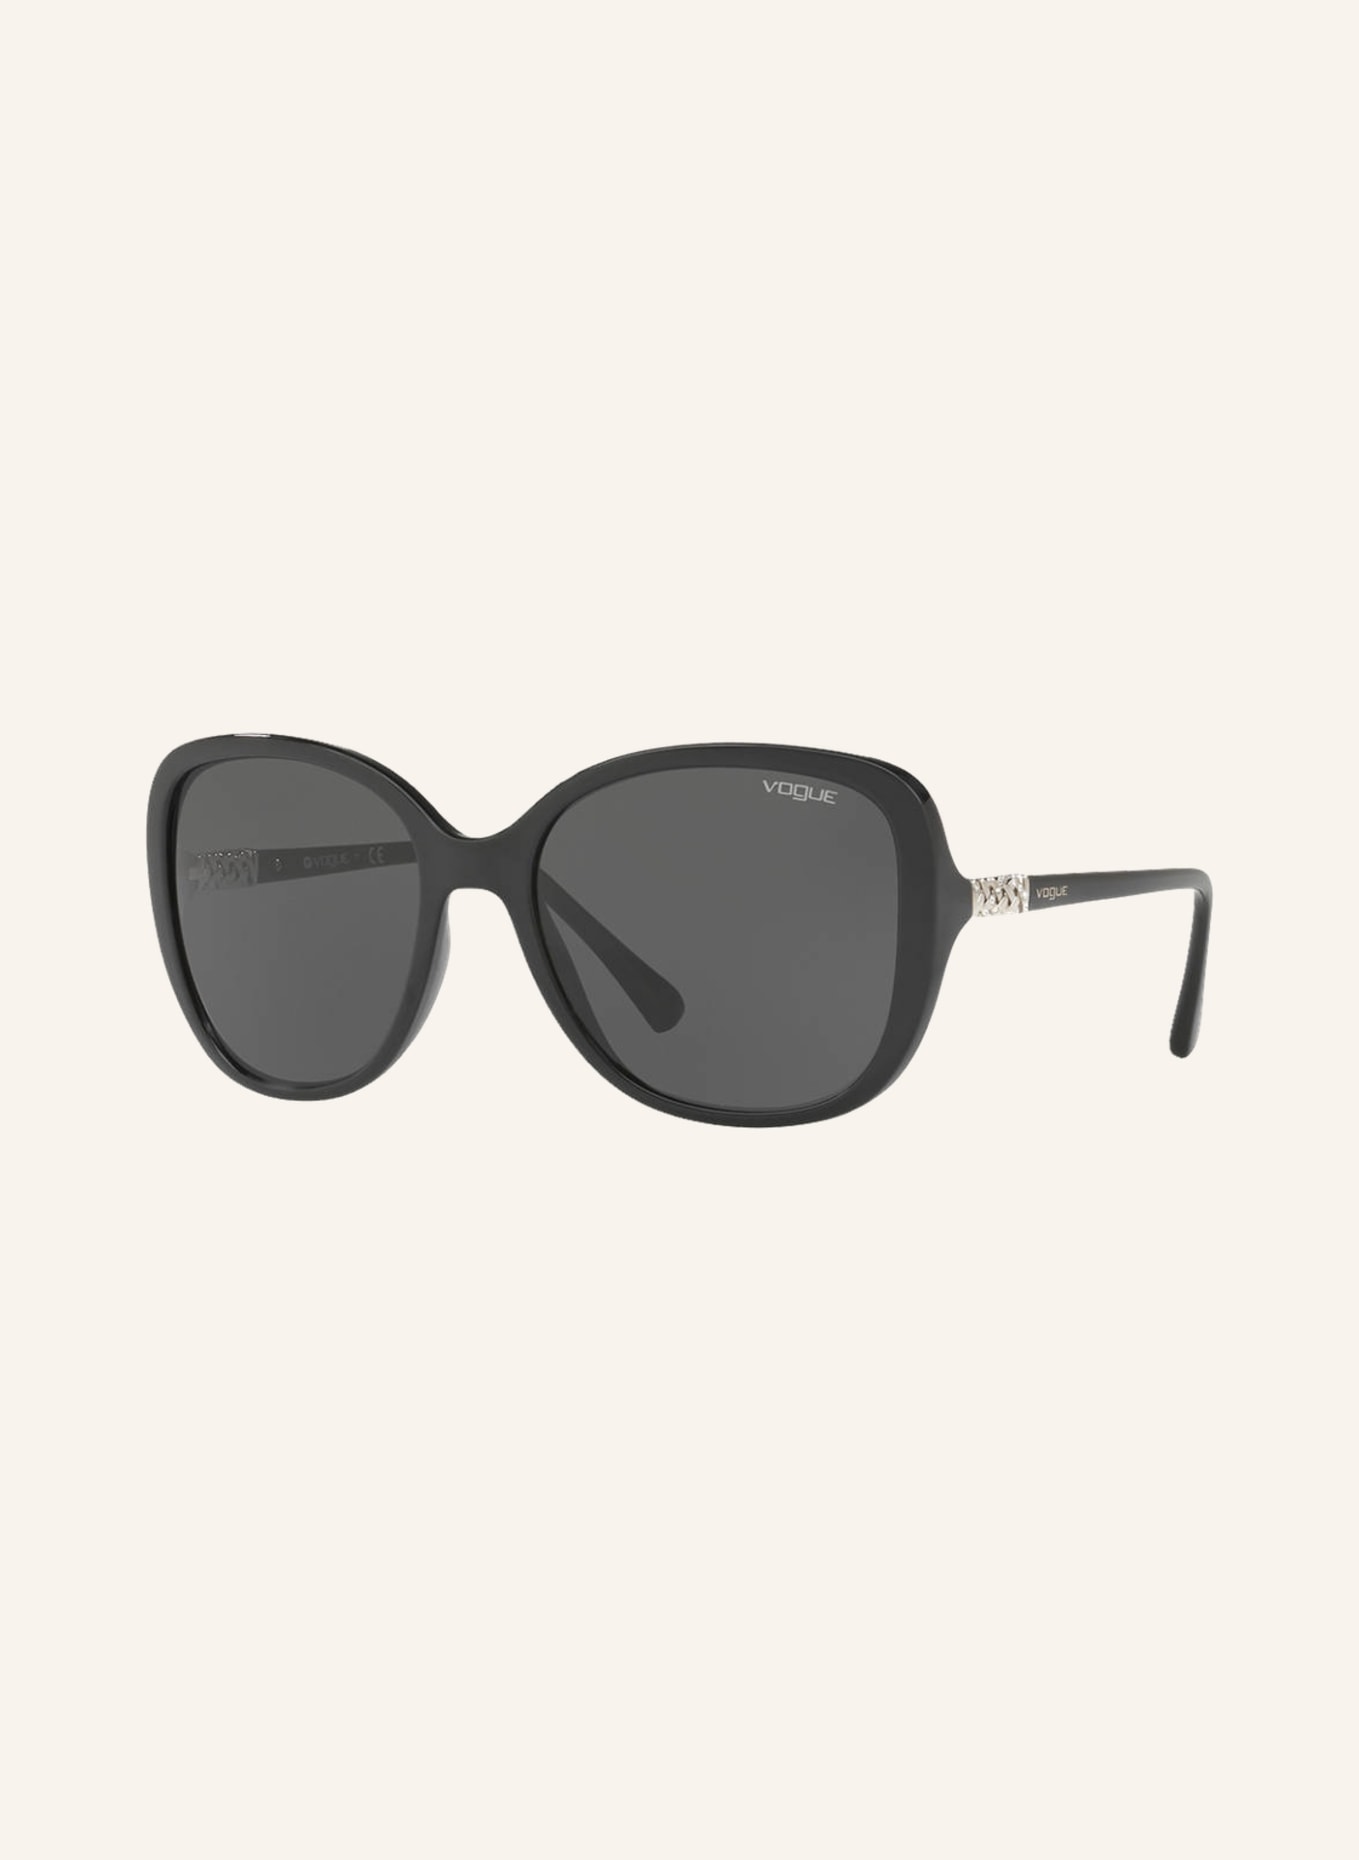 VOGUE Sunglasses VO5154SB with decorative gem trim , Color: W44/87 - BLACK/ GRAY (Image 1)